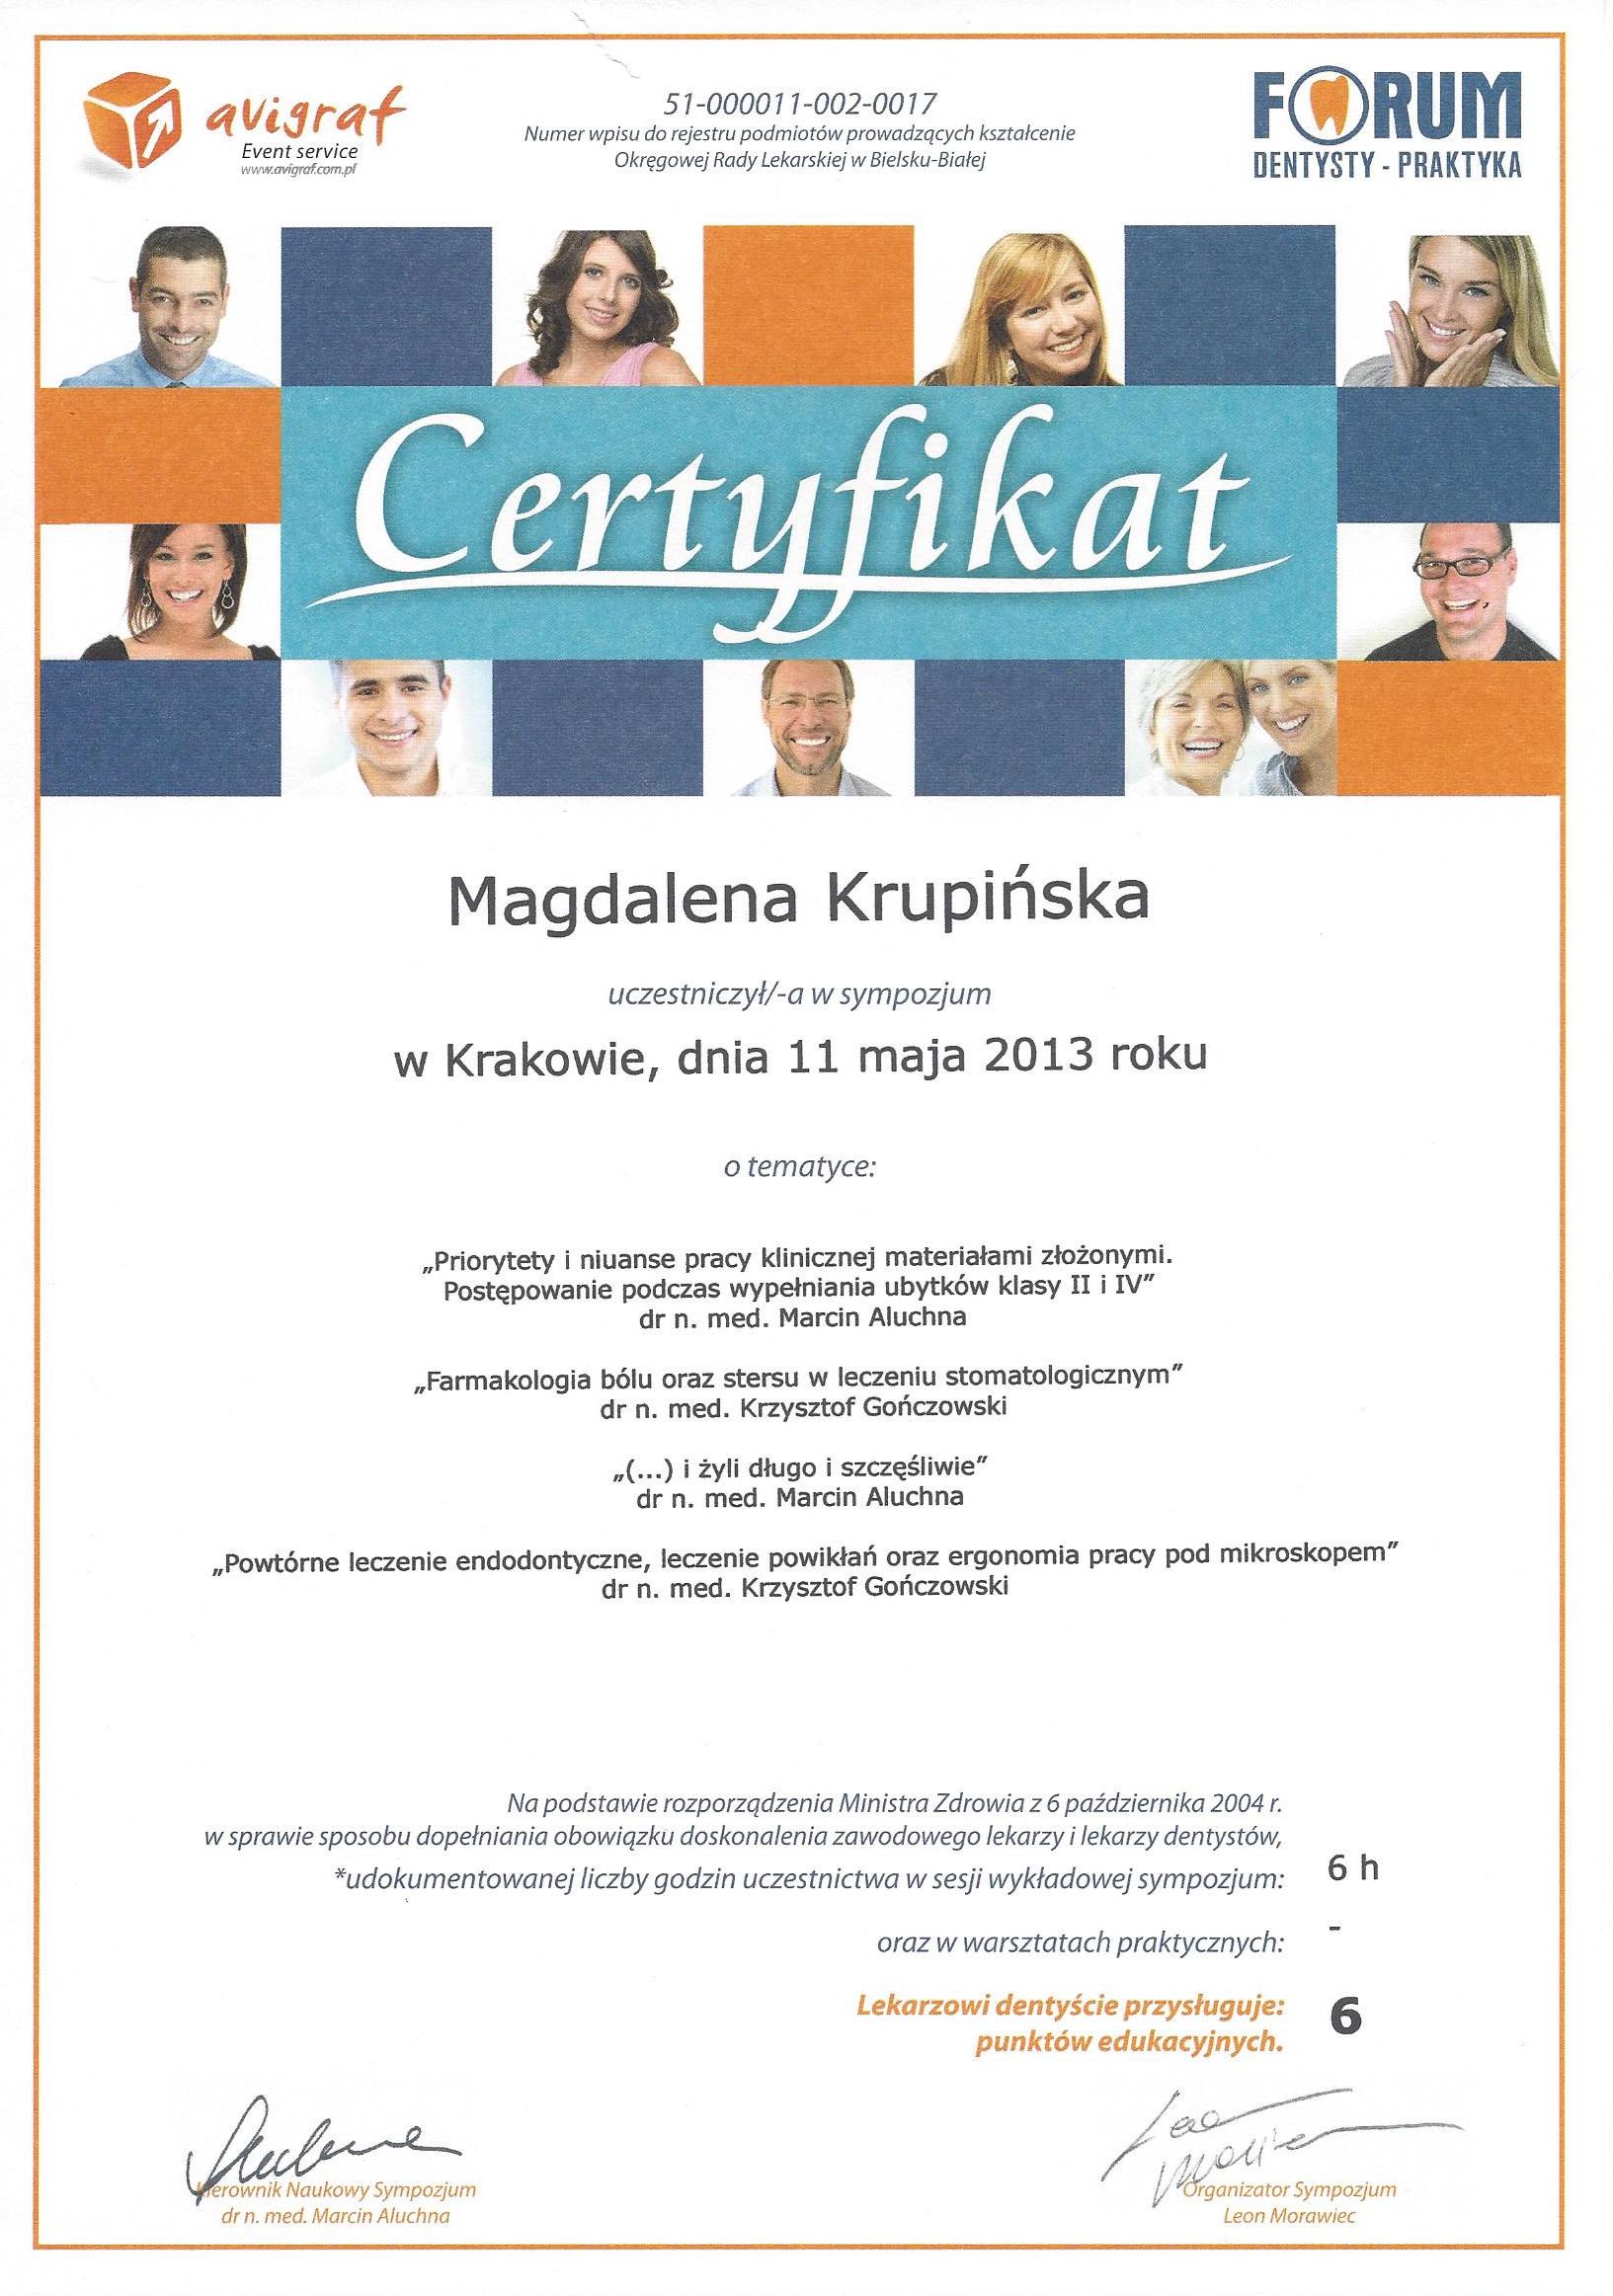 Magdalena Krupińska certyfikat 48